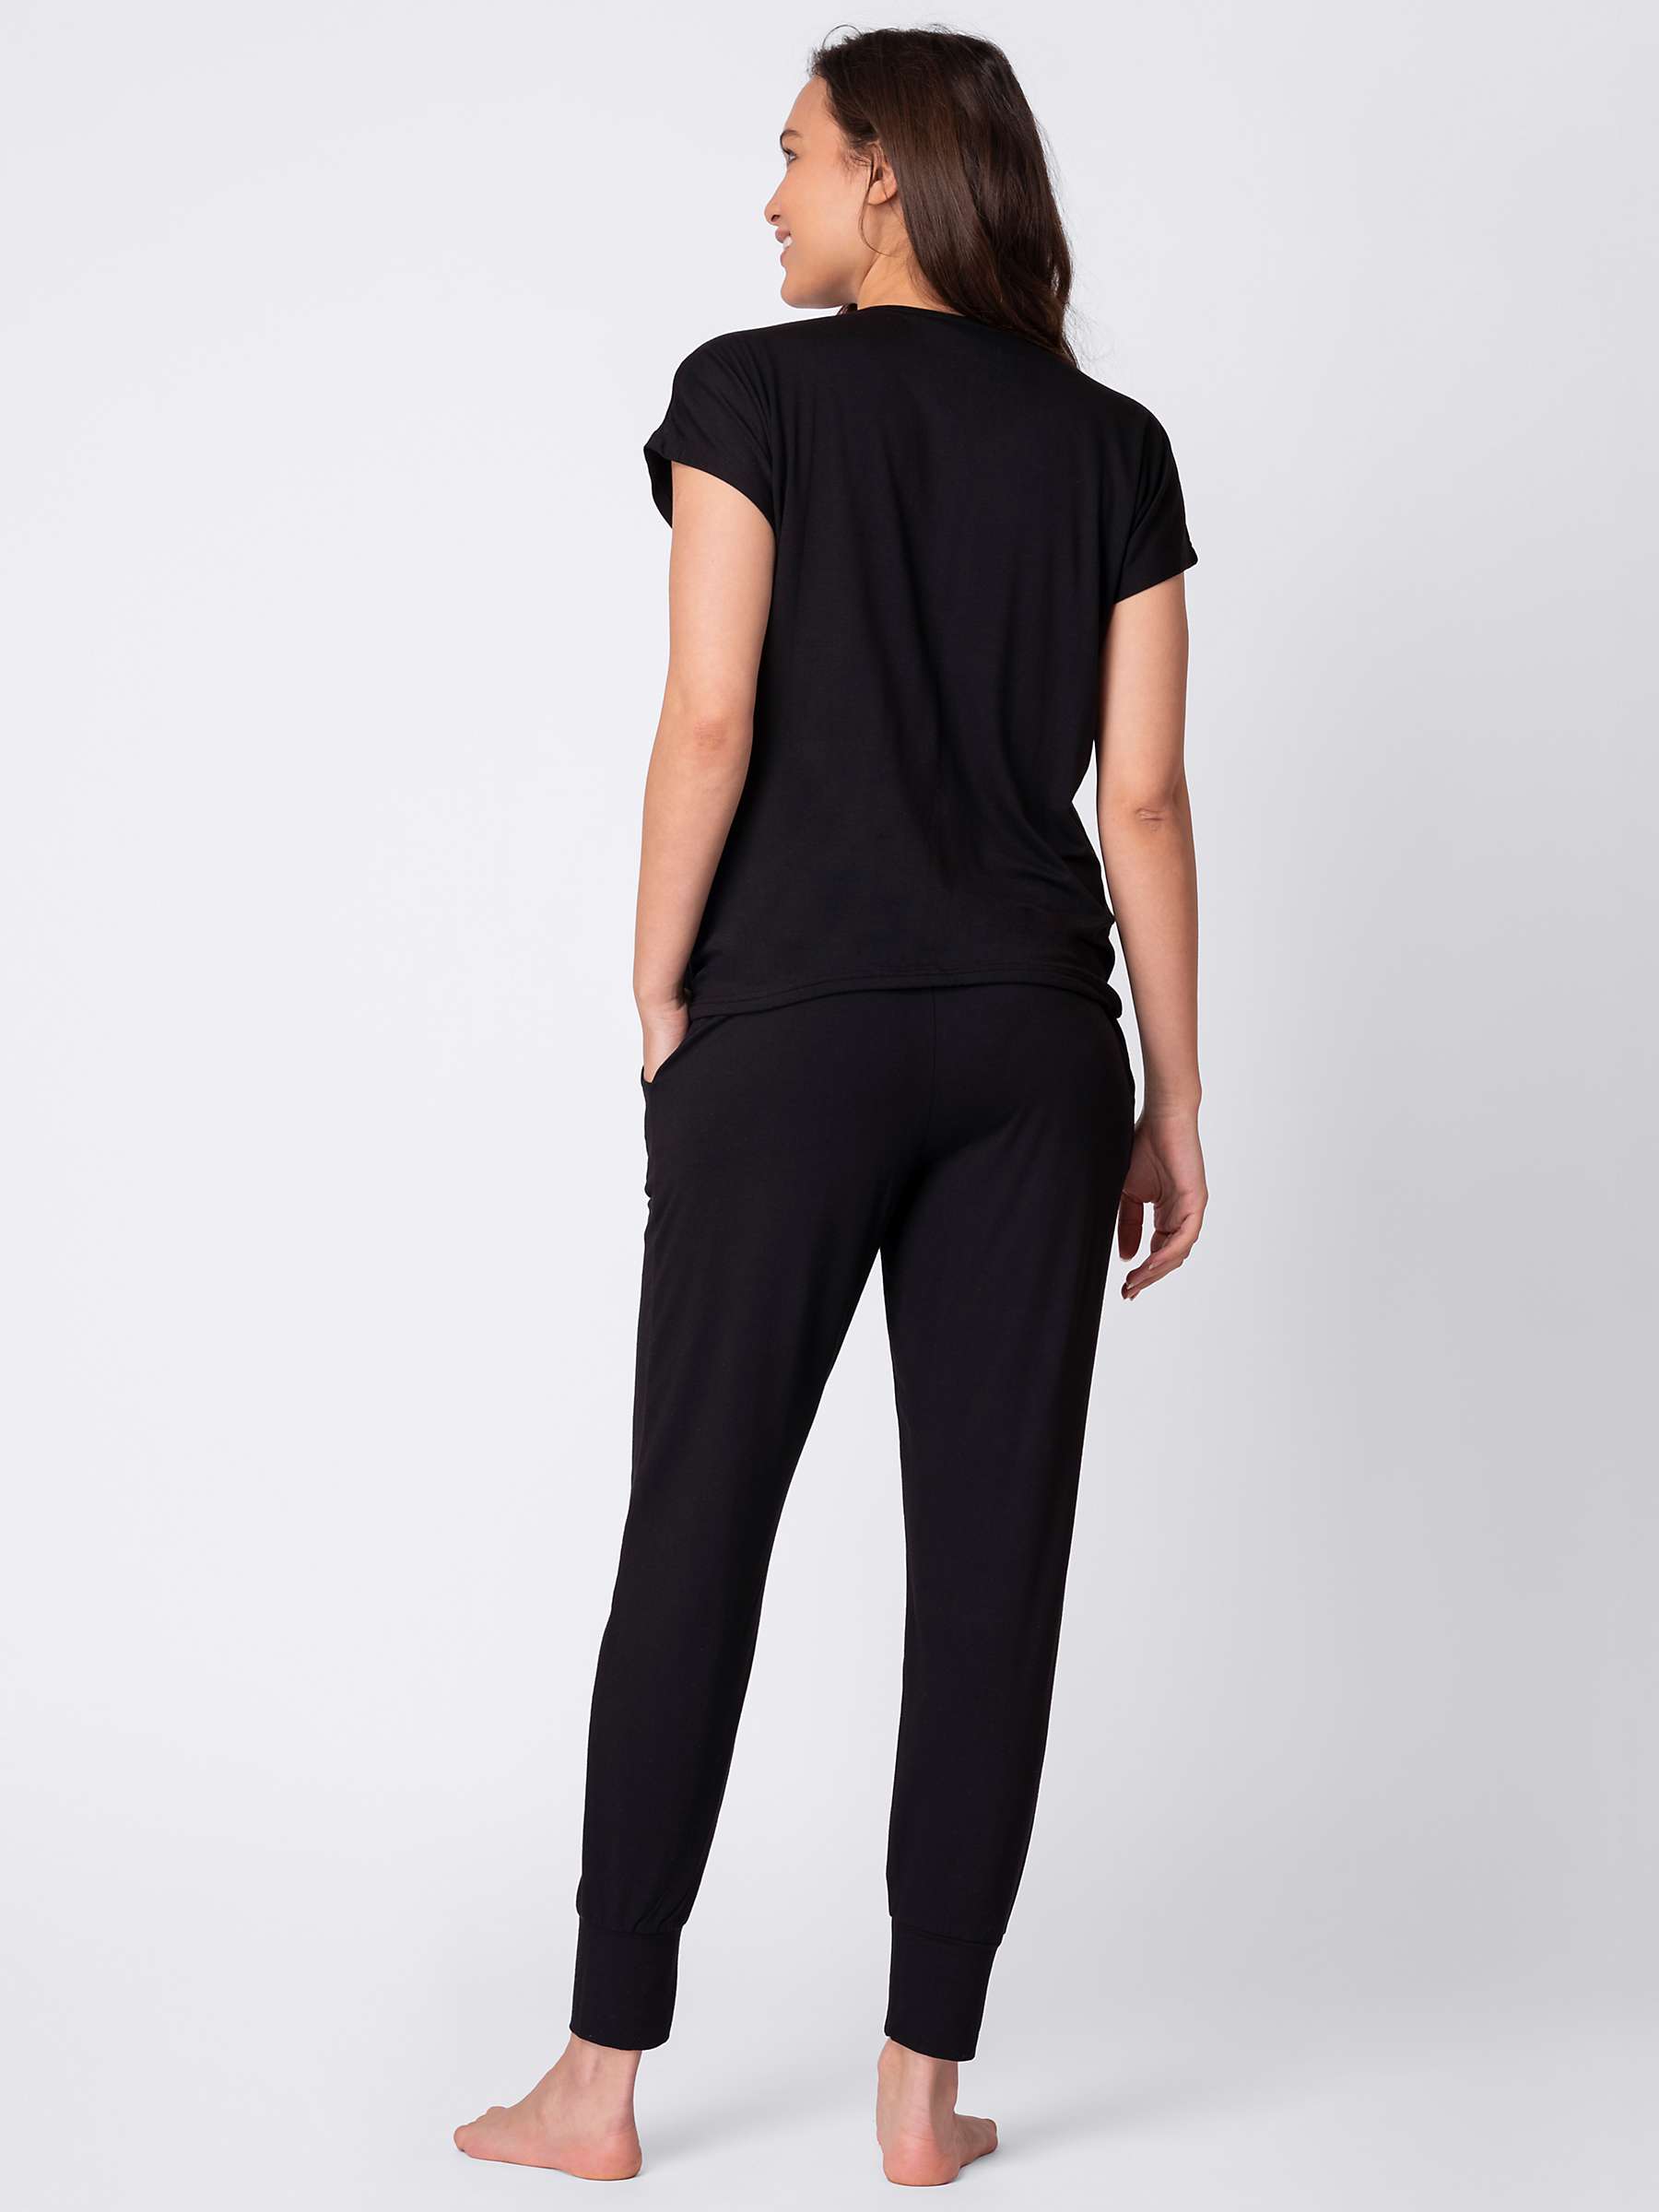 Buy Seraphine Karen Plain Maternity & Nursing Loungewear Set, Black Online at johnlewis.com